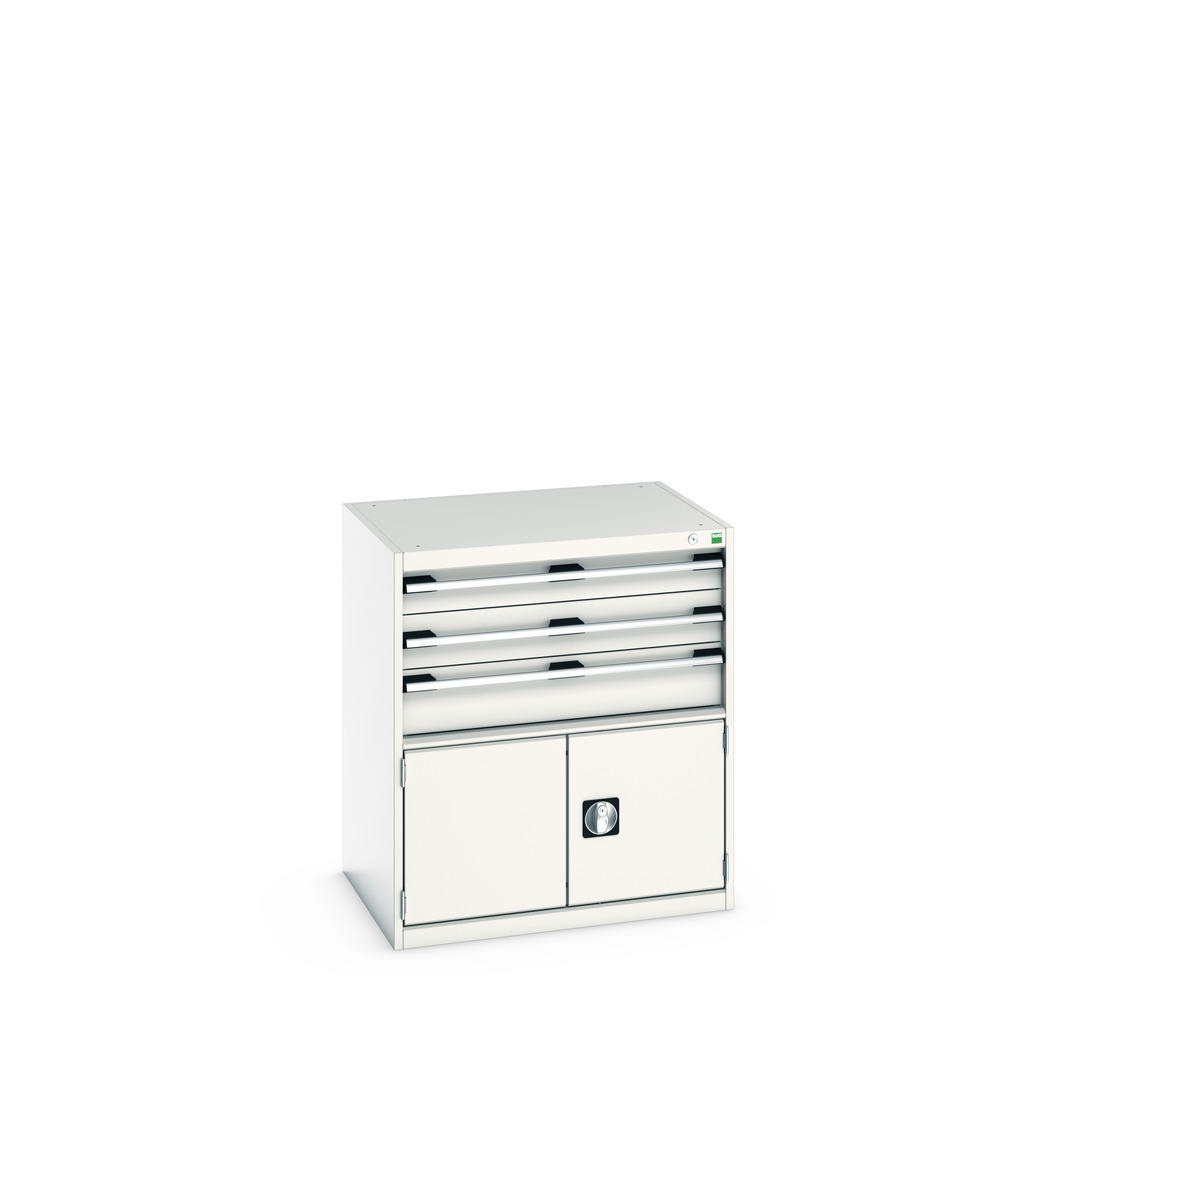 40020034.16V - cubio drawer-door cabinet